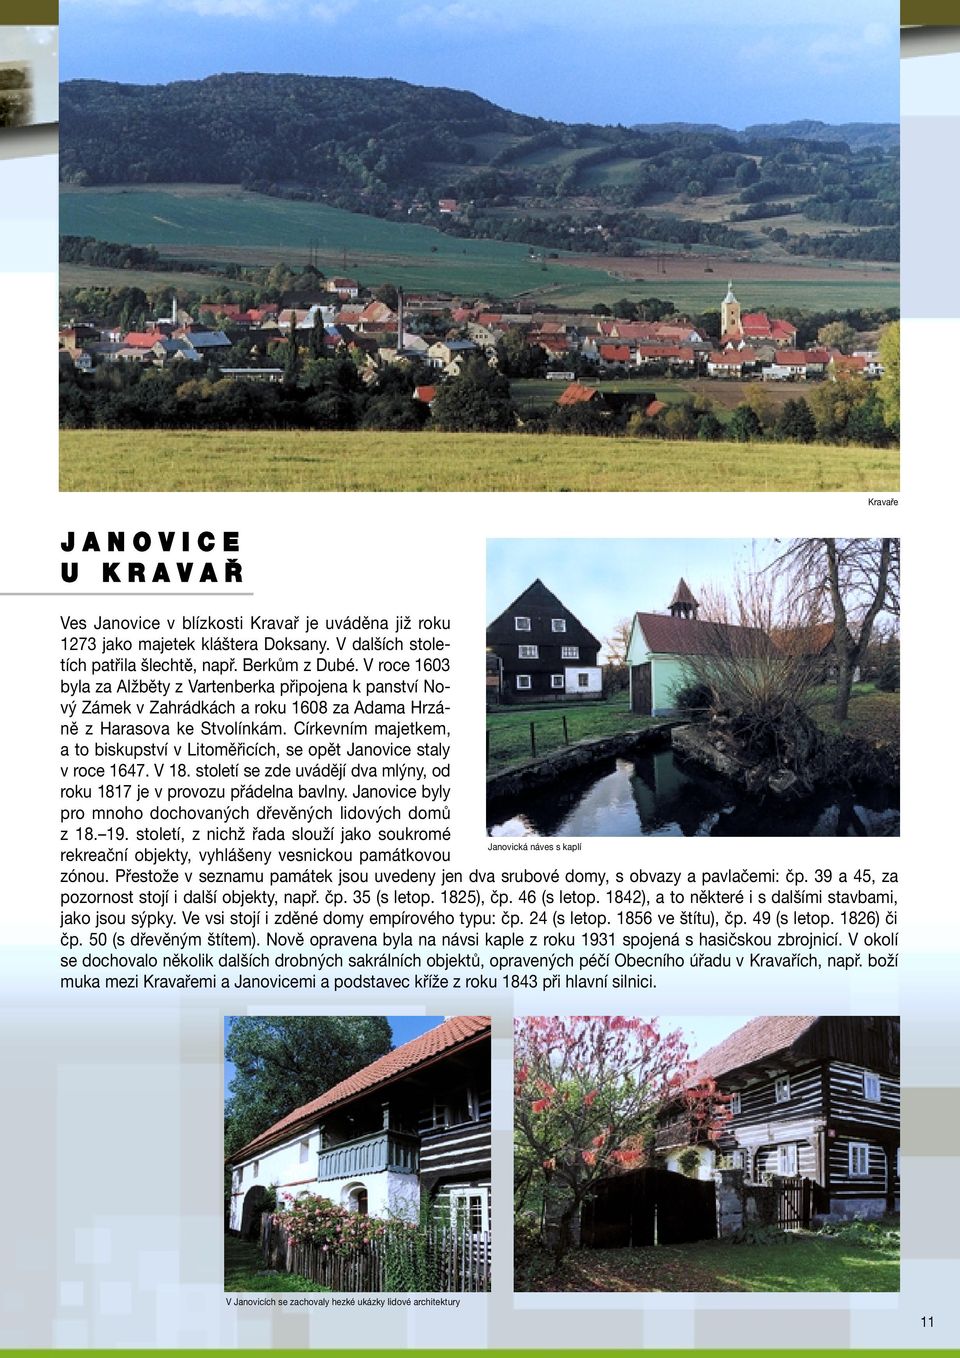 Církevním majetkem, a to biskupství v Litoměřicích, se opět Janovice staly v roce 1647. V 18. století se zde uvádějí dva mlýny, od roku 1817 je v provozu přádelna bavlny.